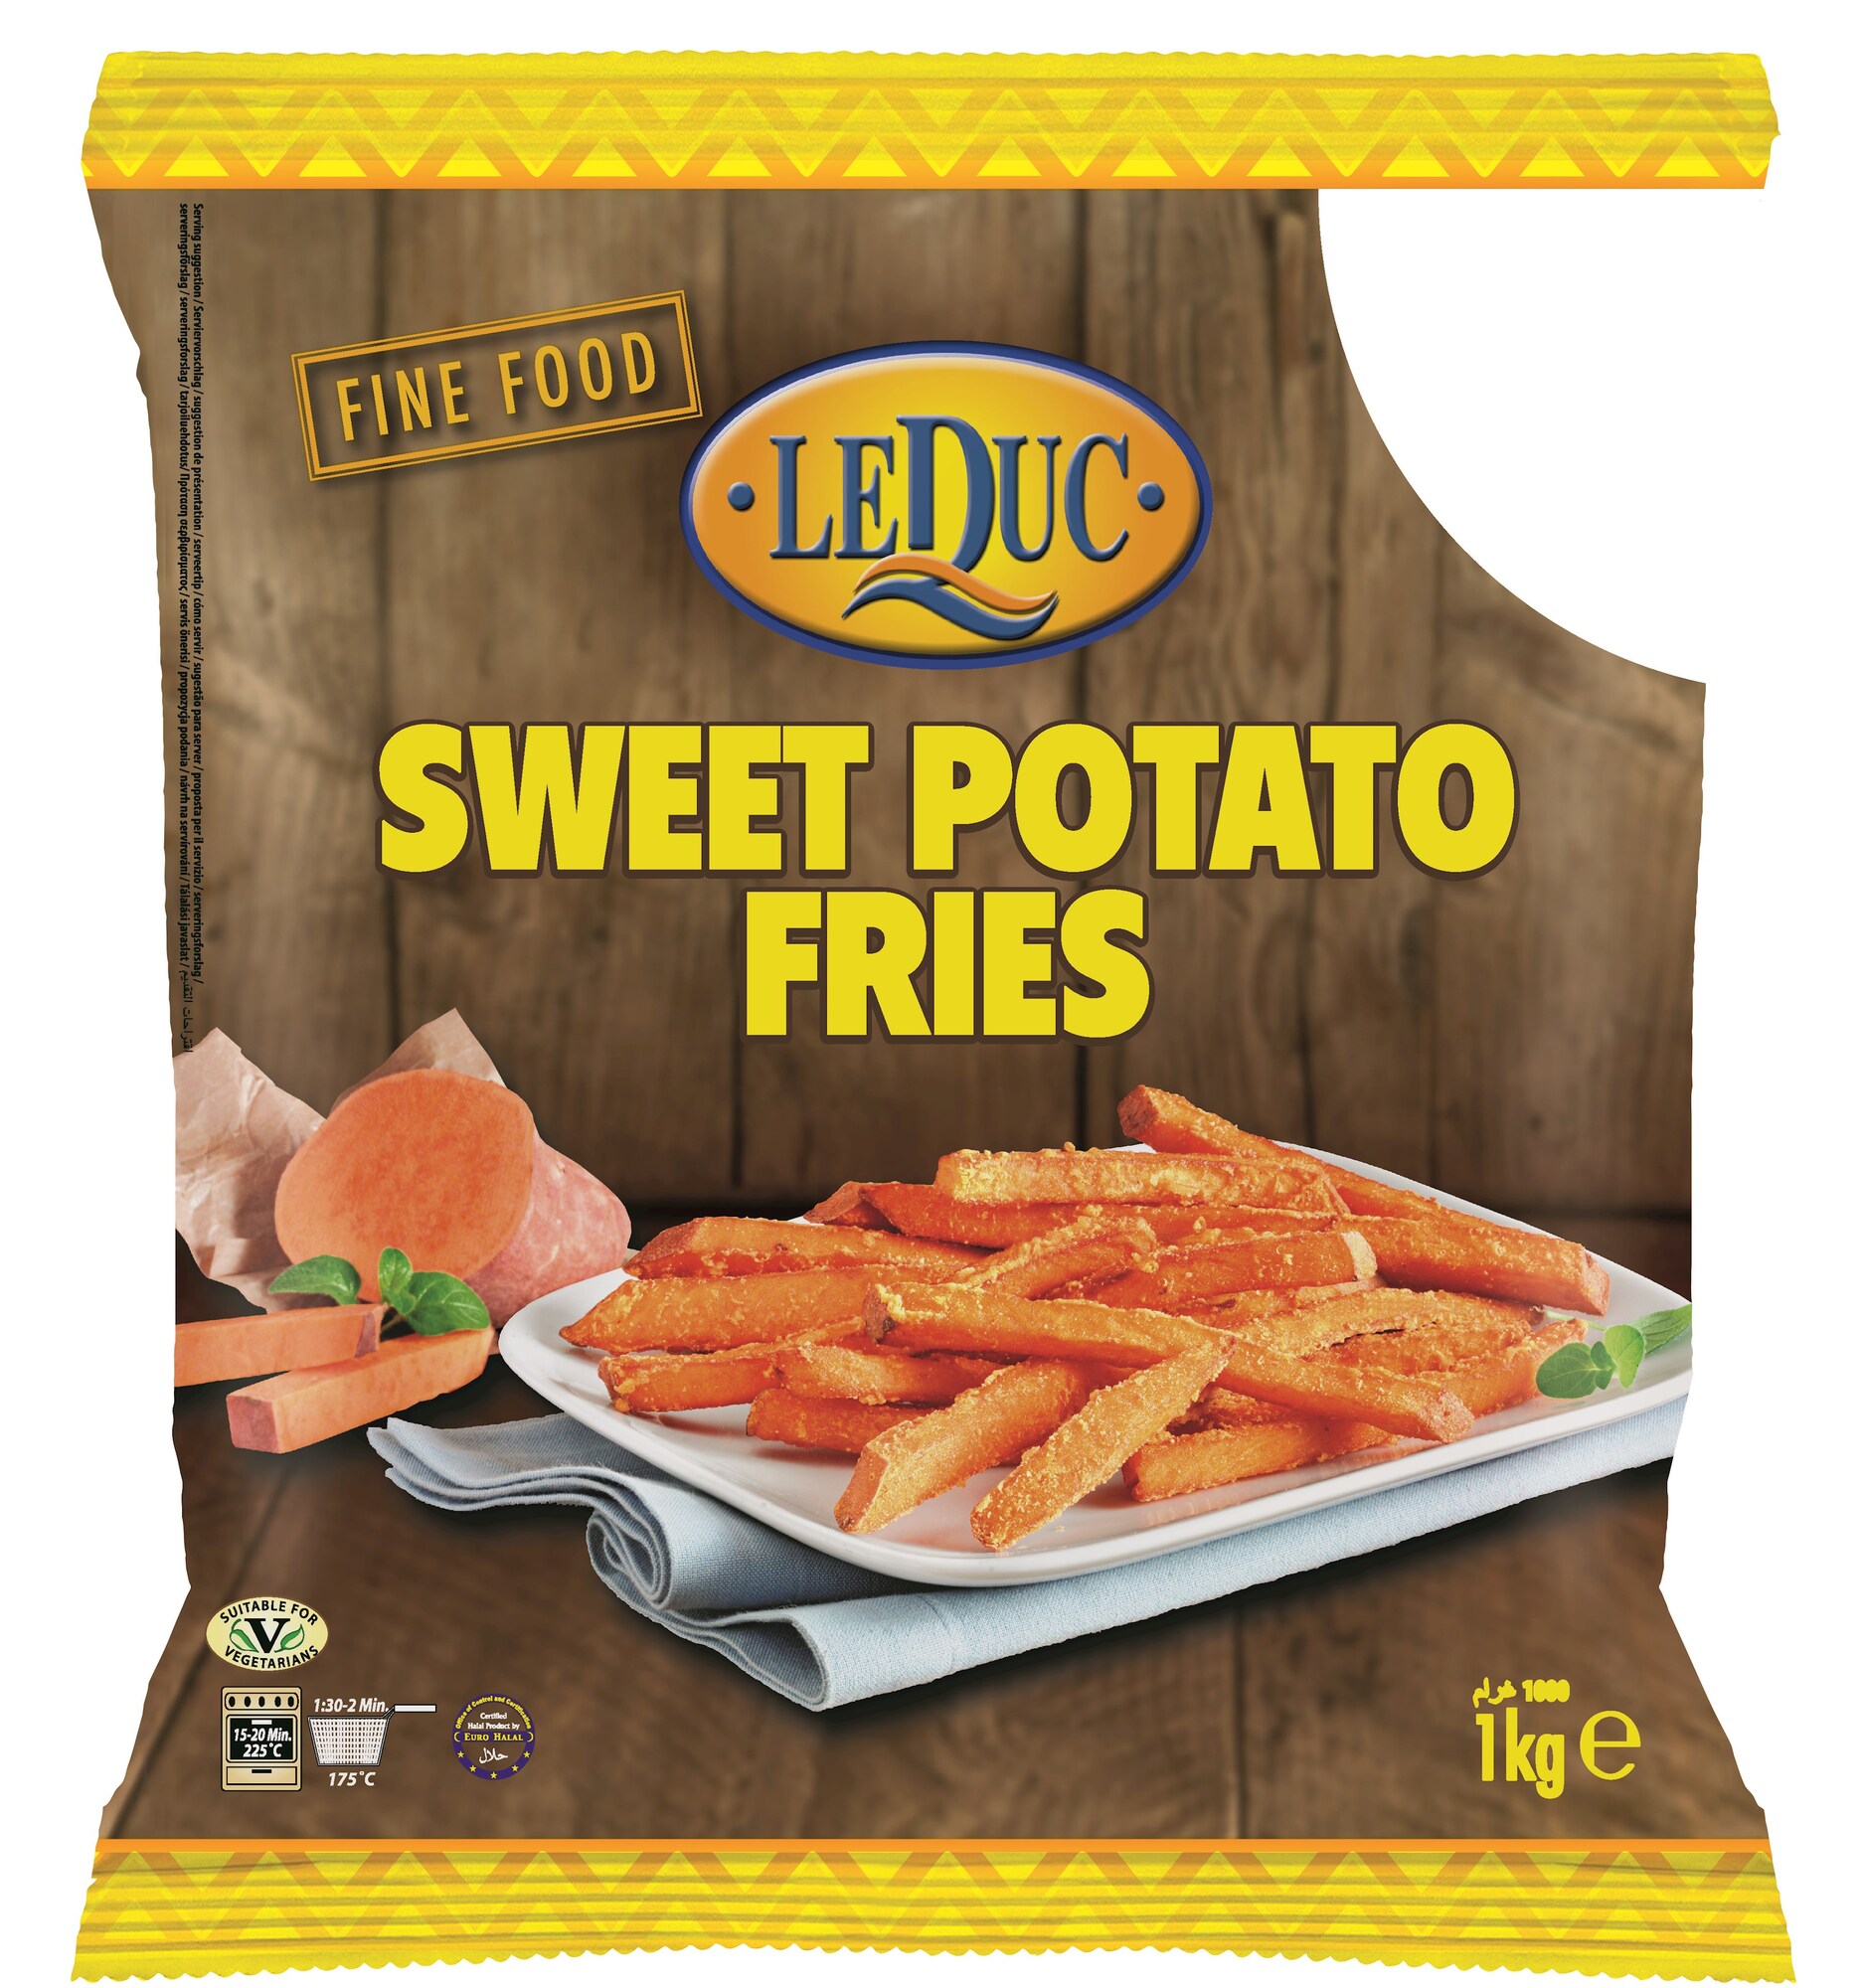 71204 Le duc sweet potato fries 1kg